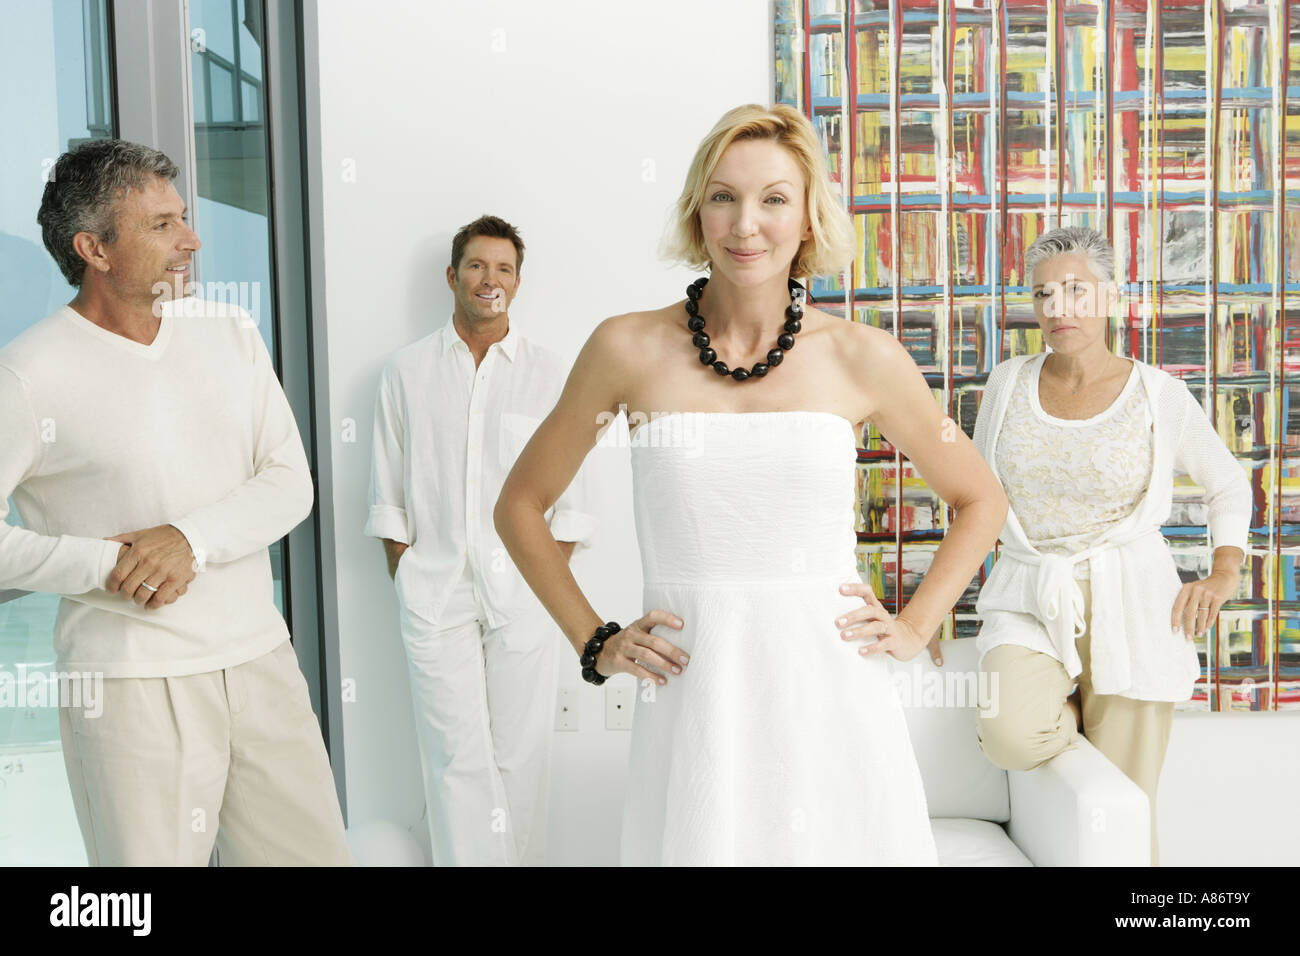 Gruppe von vier Erwachsene alle in weiß gekleidet Stockfoto